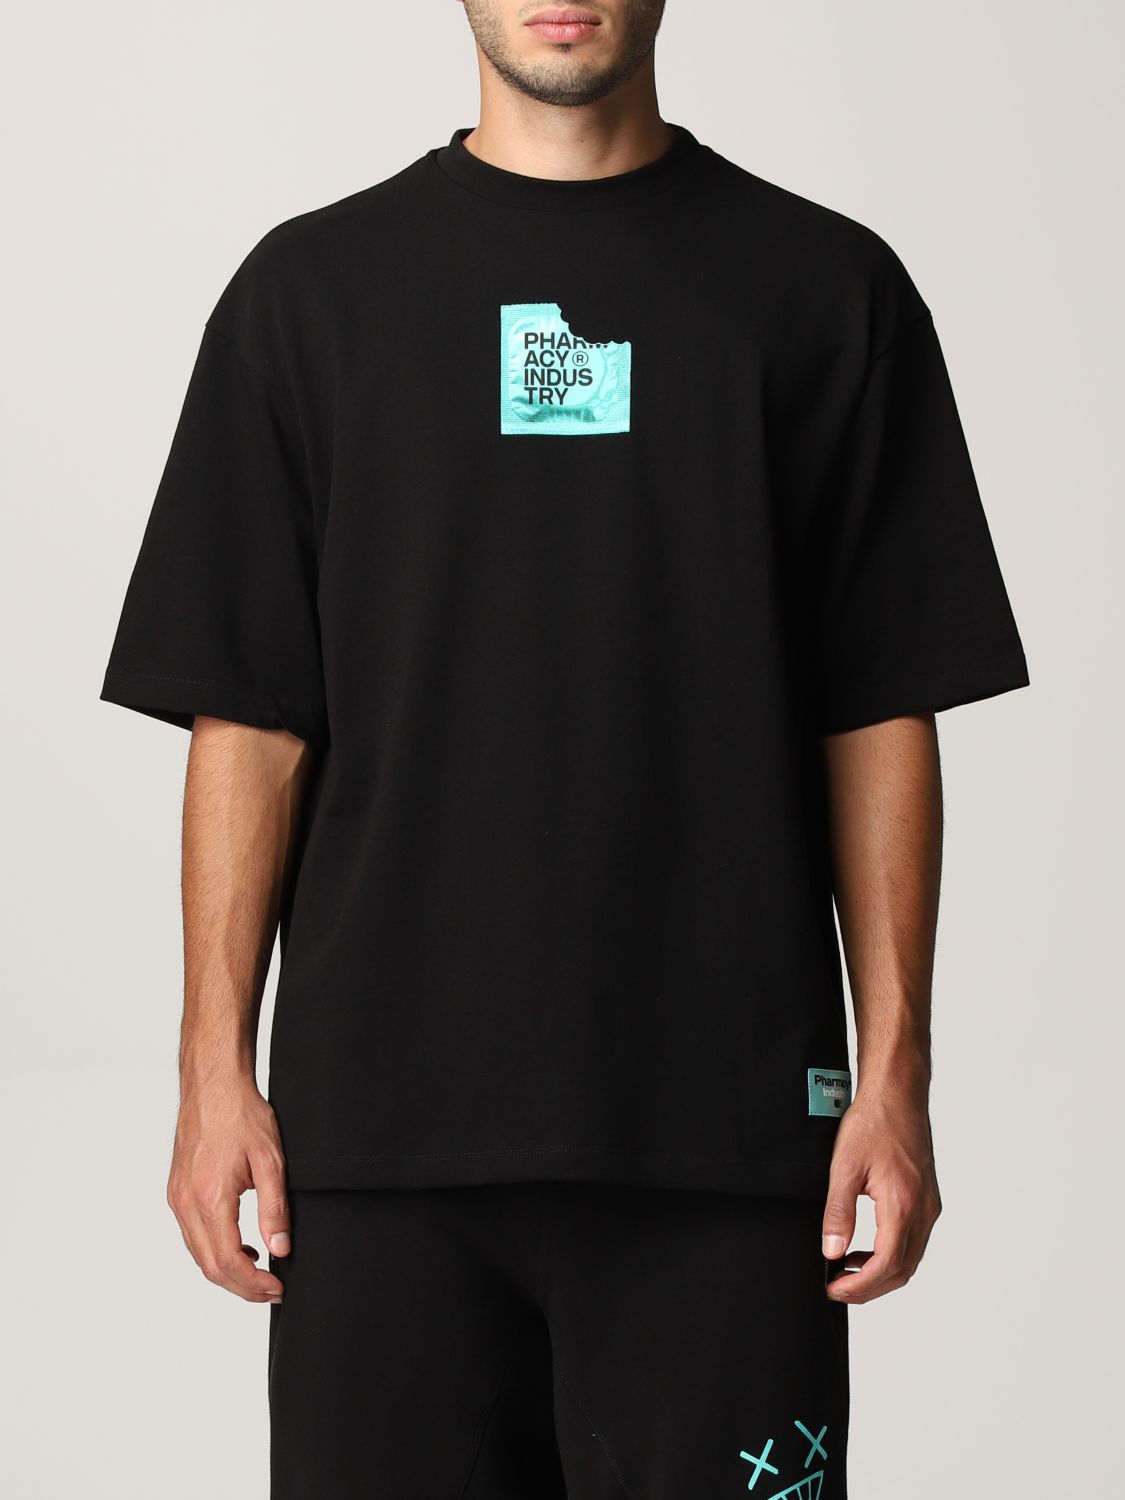 PHARMACY INDUSTRY: t-shirt for man - Black | Pharmacy Industry t-shirt ...